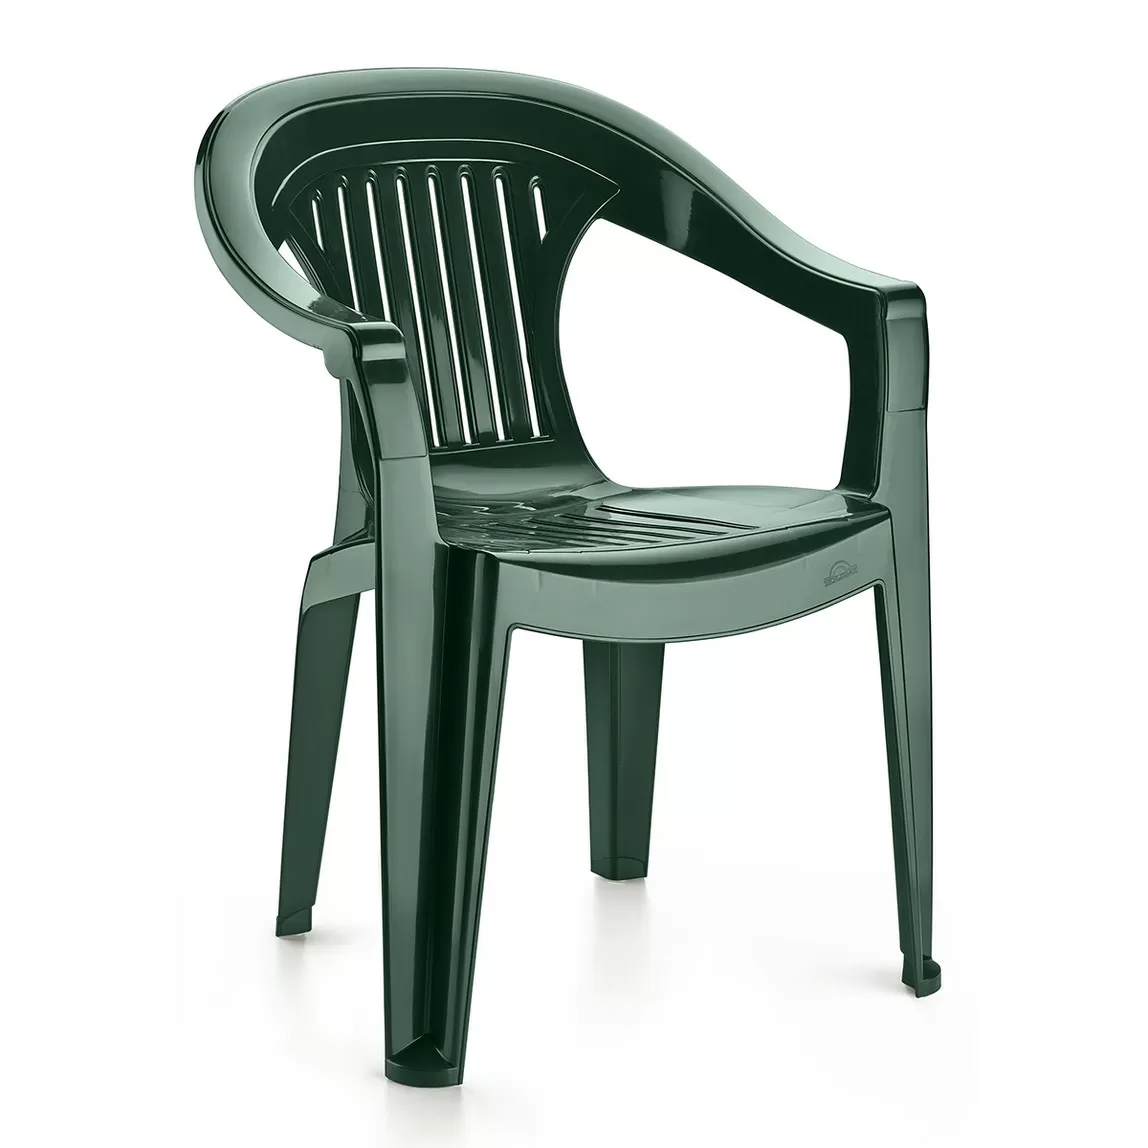 2.el temiz plastik sandalyeler FİYATI: 30 TL